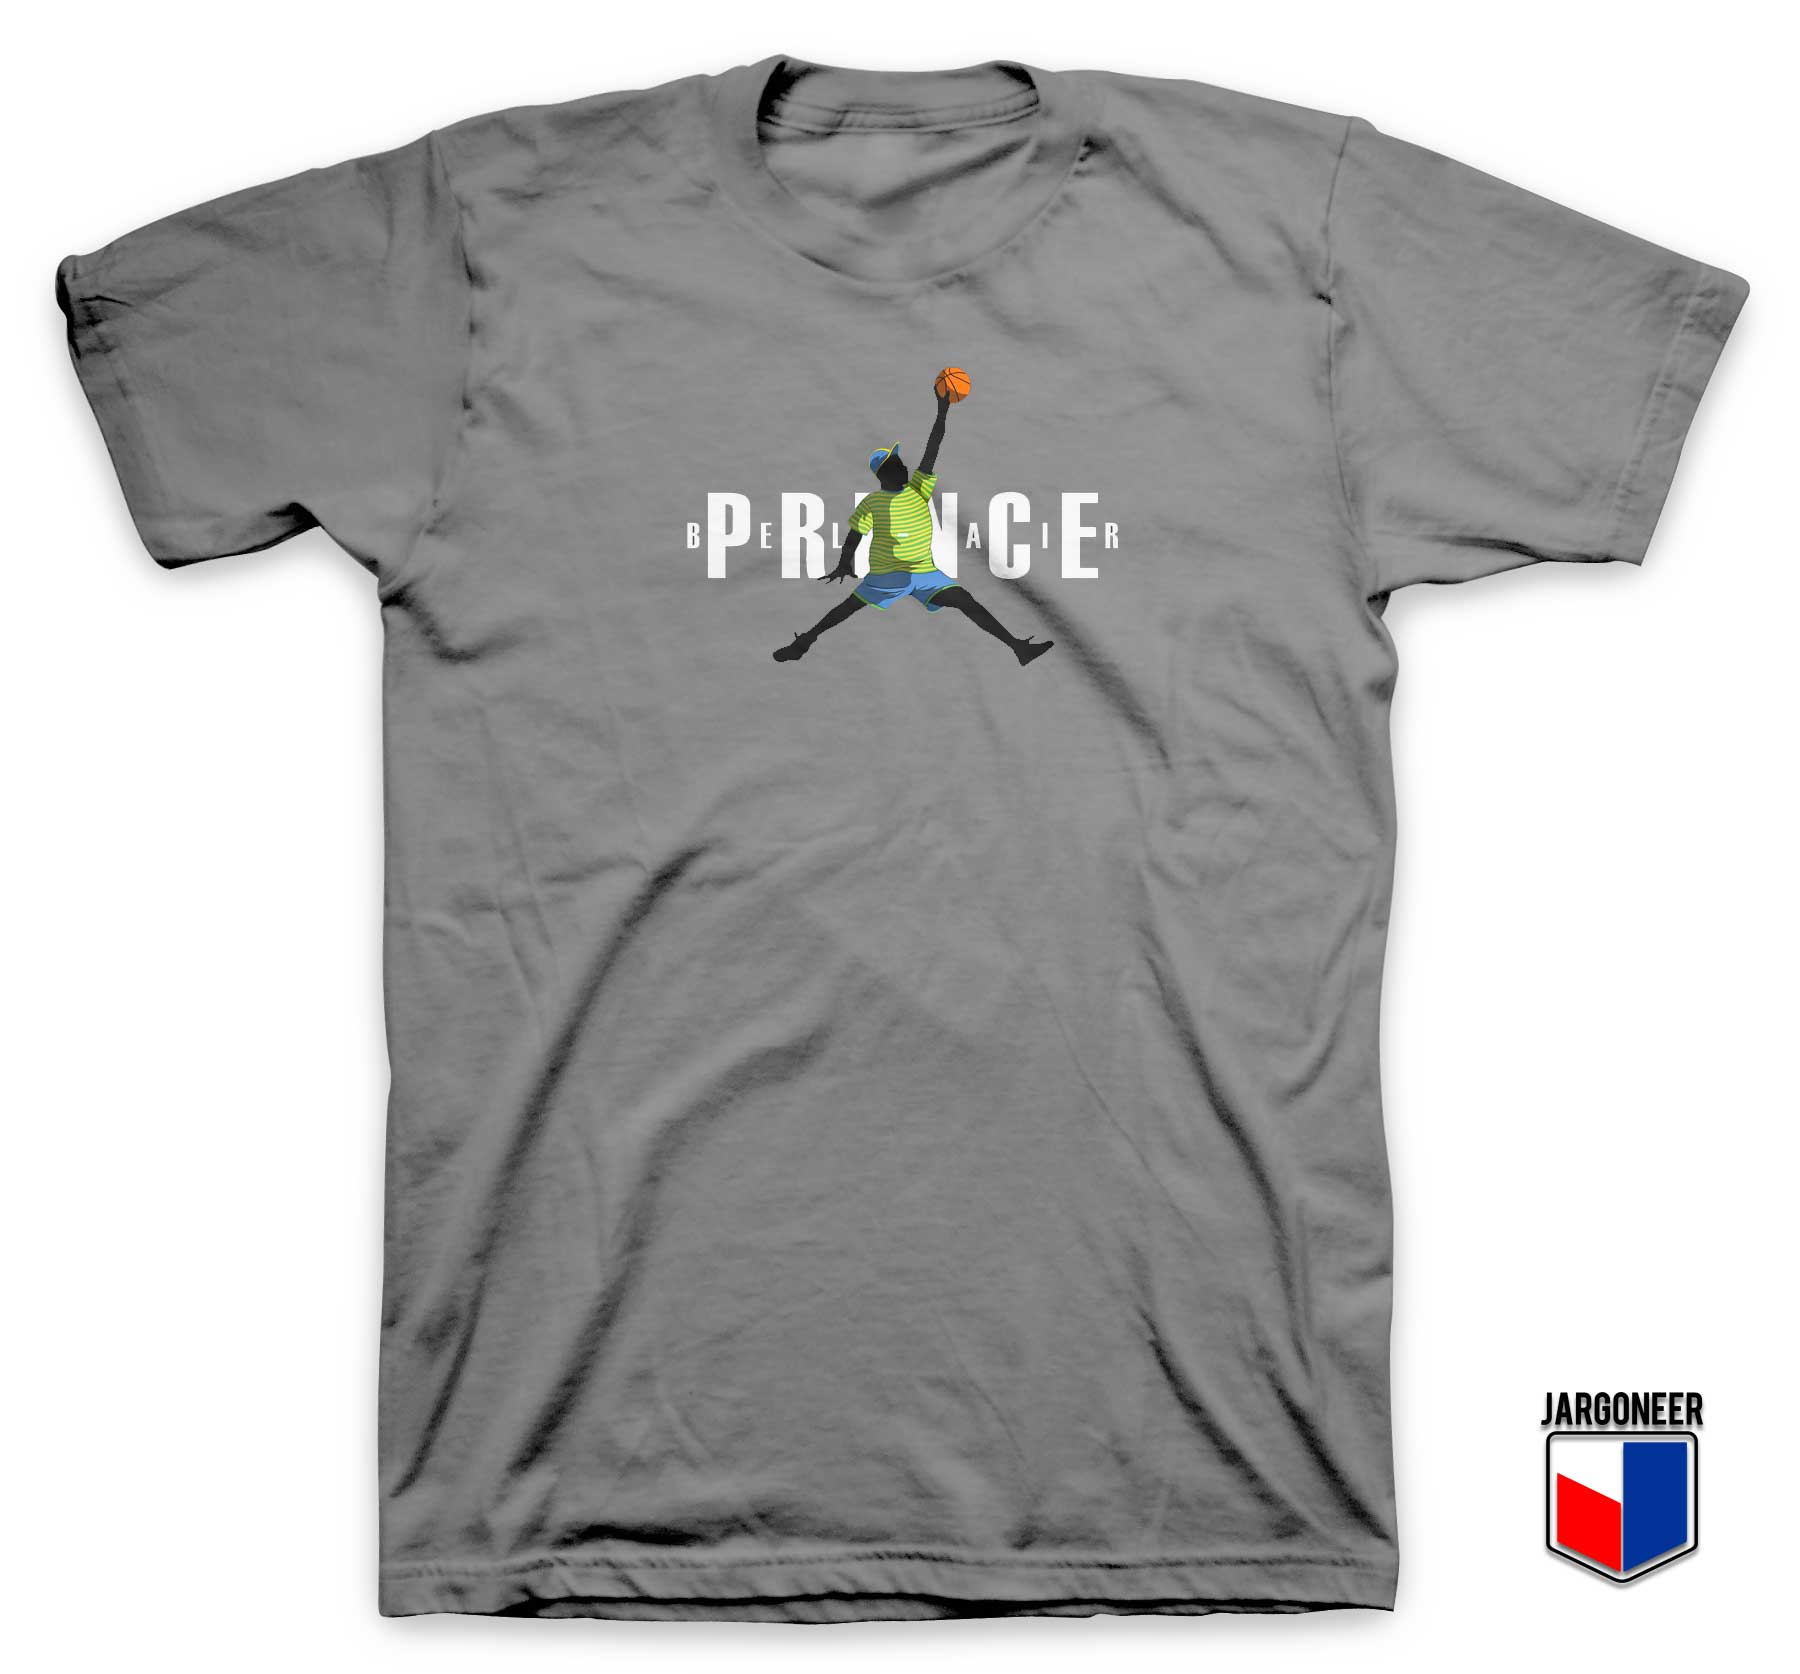 Prince Bel Air T Shirt - Shop Unique Graphic Cool Shirt Designs